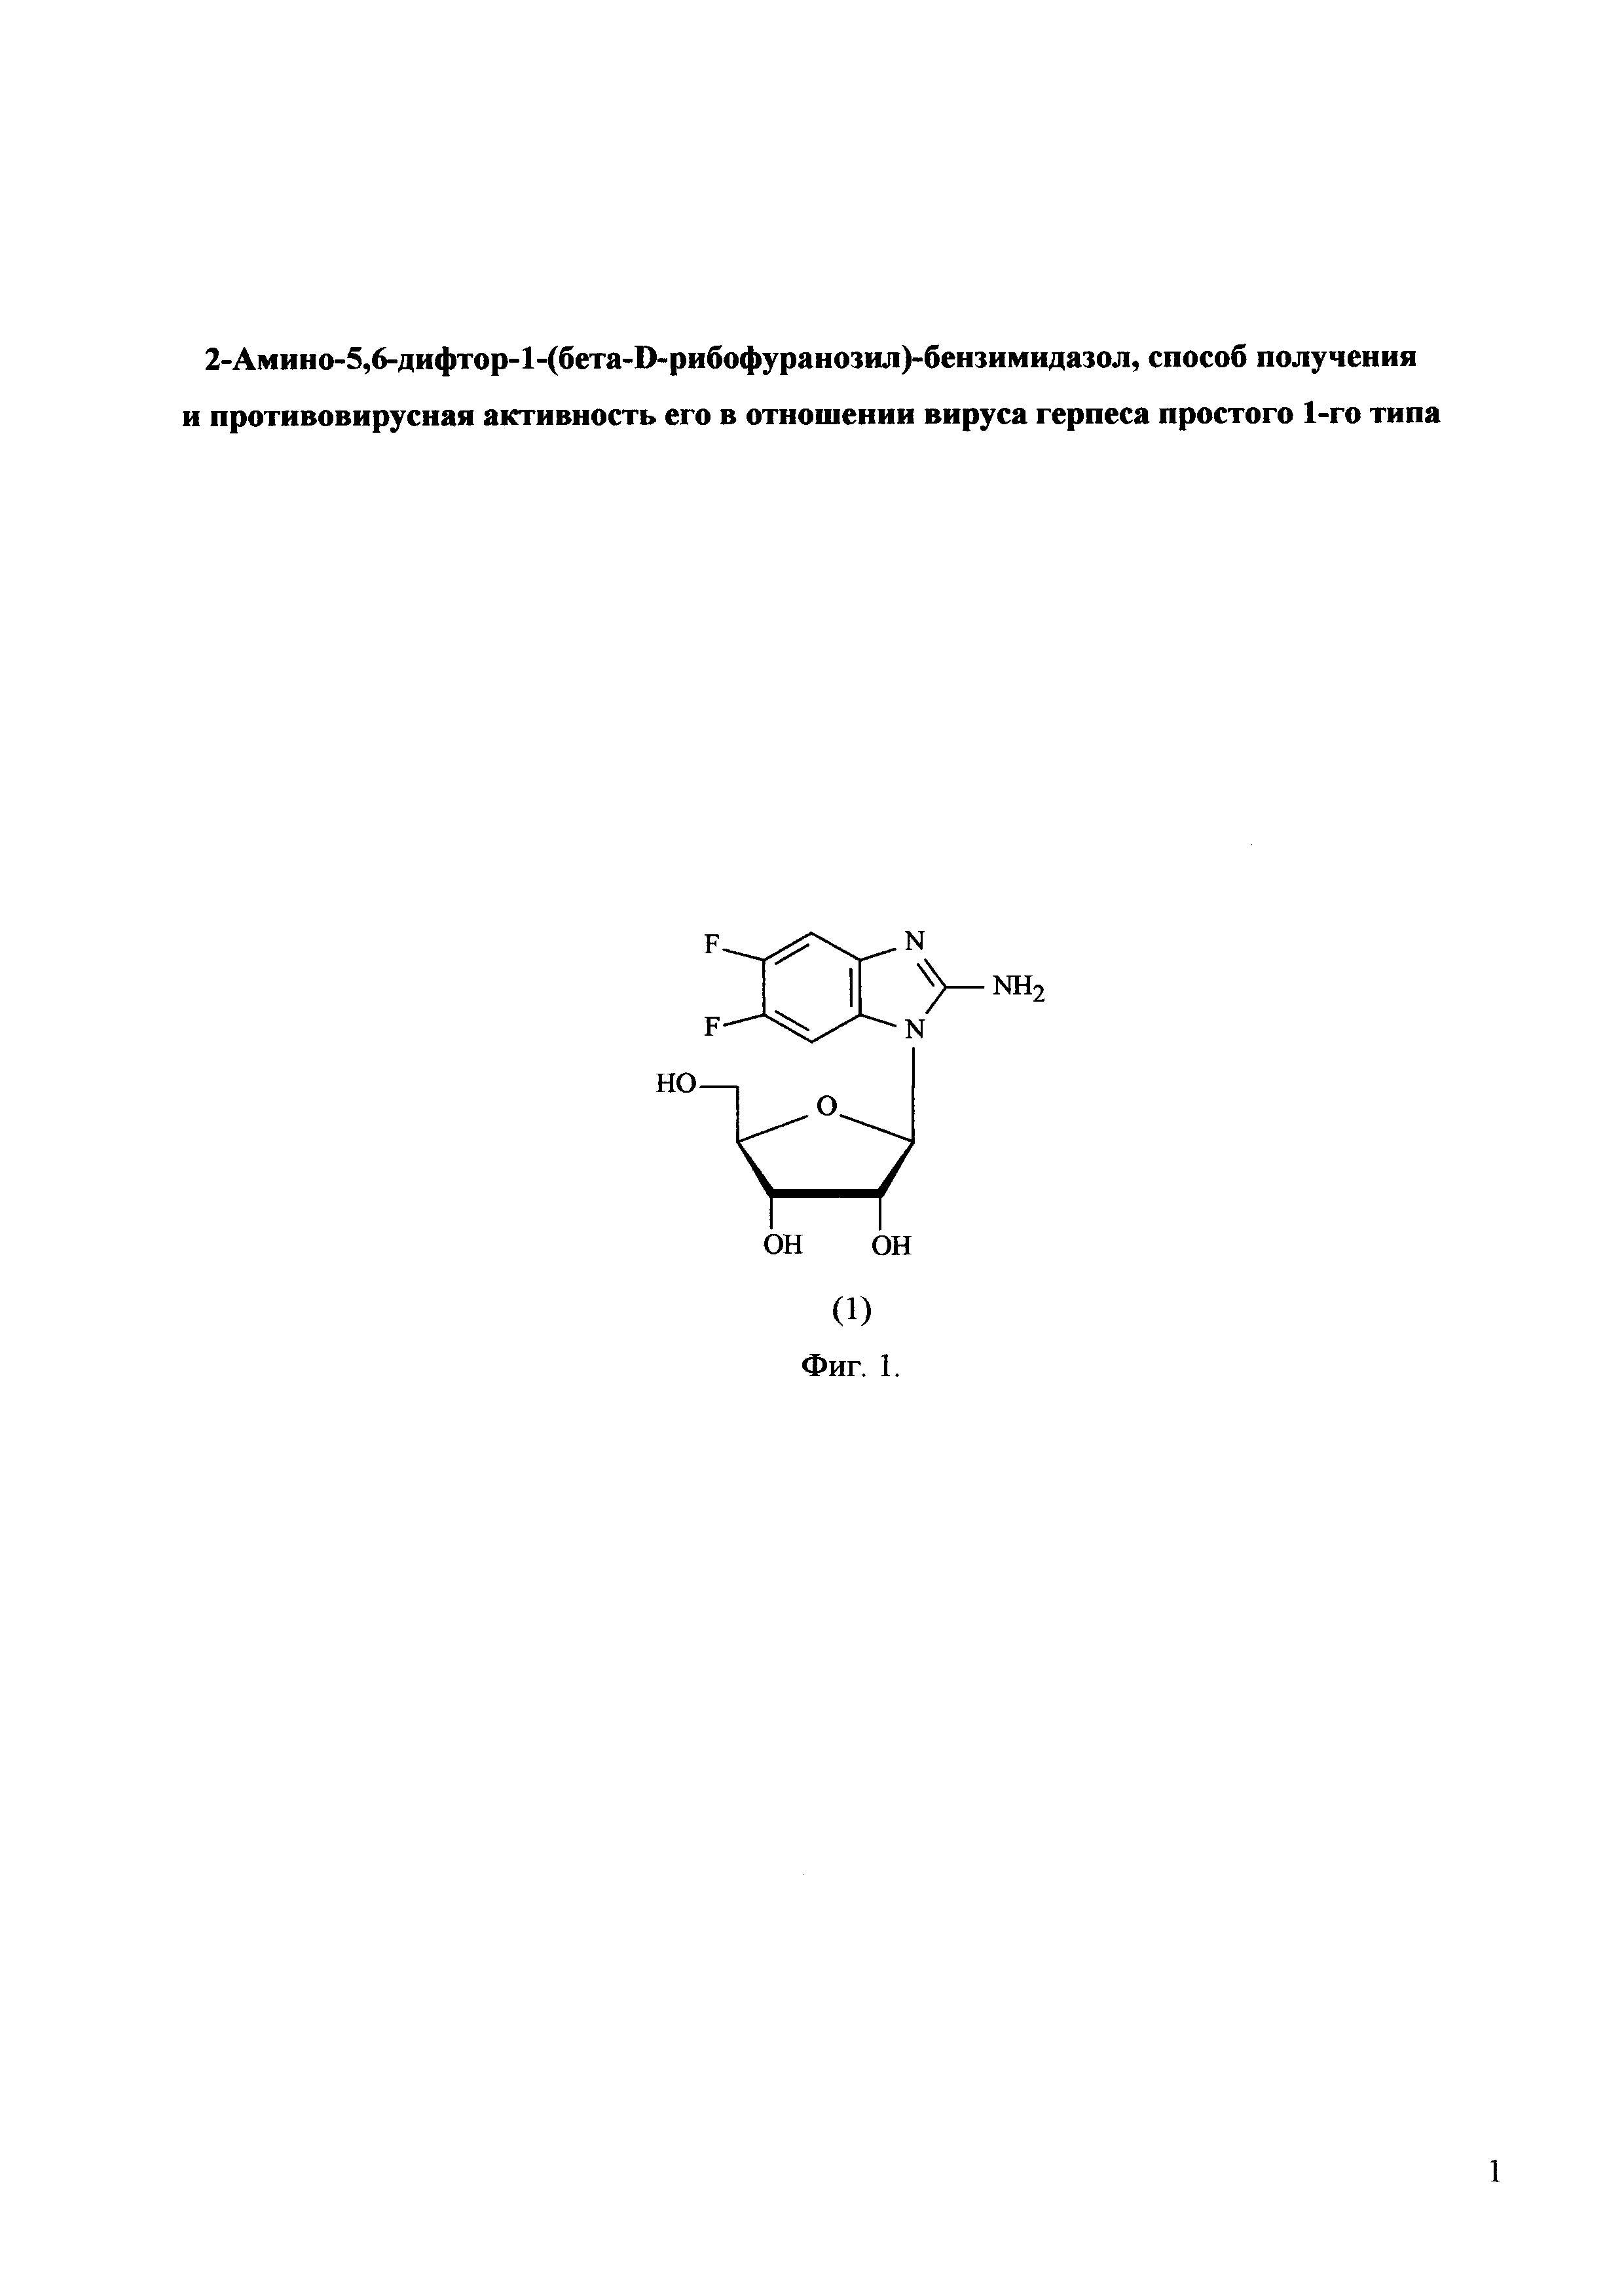 2-Амино-5,6-дифтор-1-(бета-D-рибофуранозил)-бензимидазол, способ получения и противовирусная активность его в отношении вируса герпеса простого 1-го типа